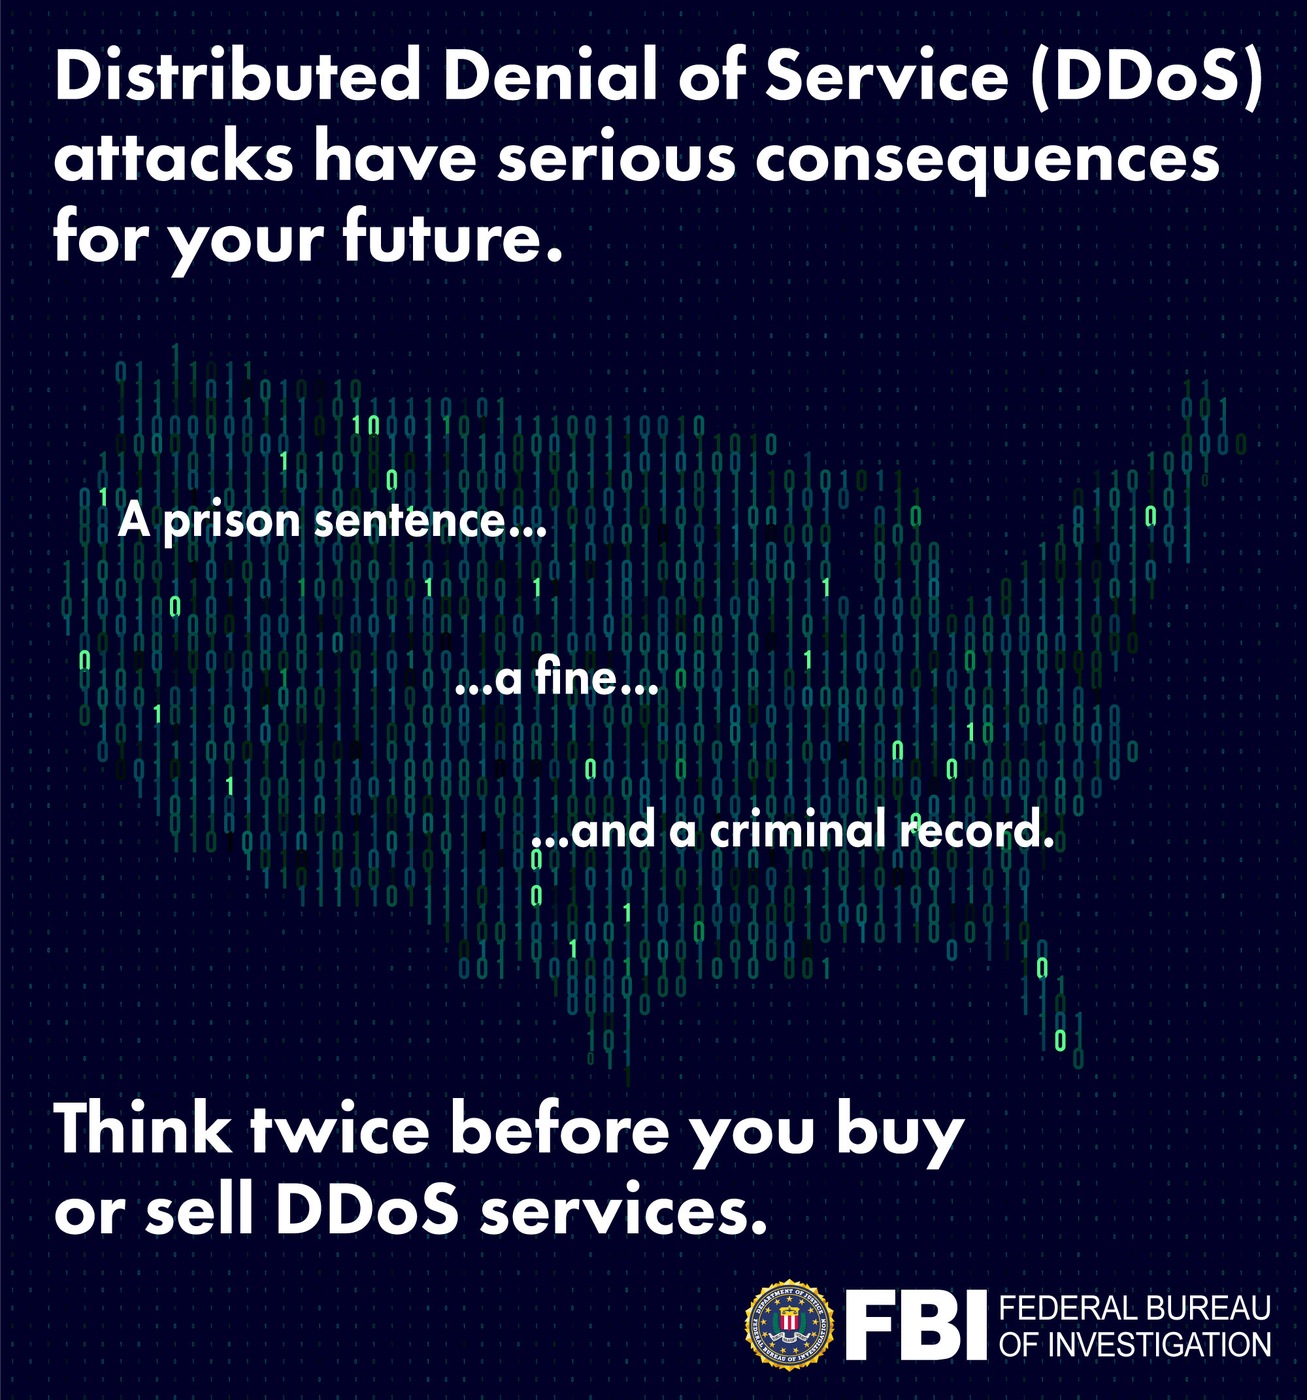 Er en DDoS en føderal forbrytelse?